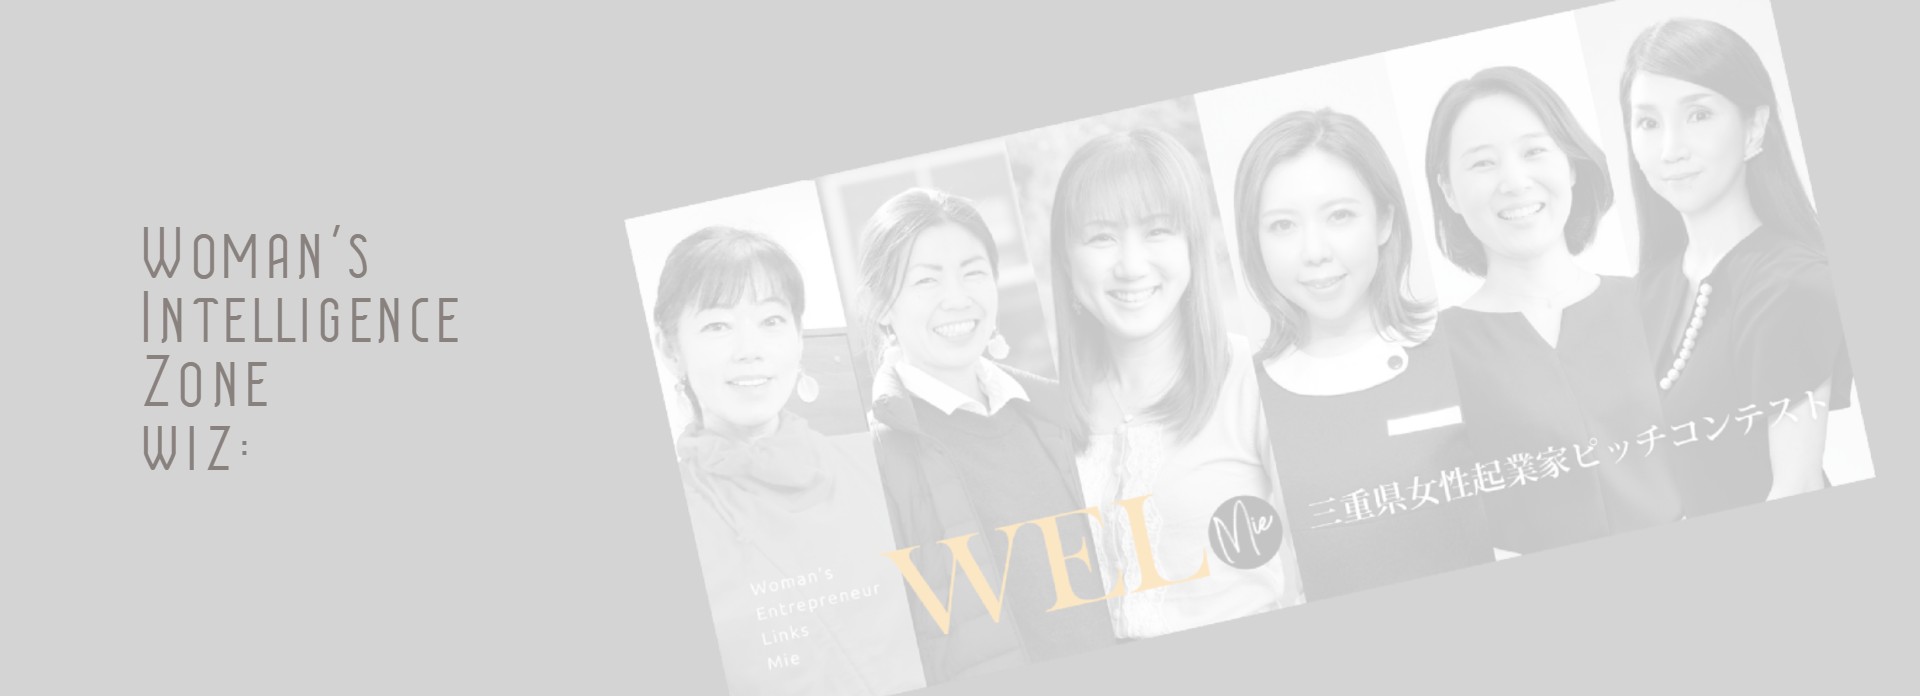 三重県女性起業家・企業家ビジネスプラットフォーム wiz:【ウィズ】